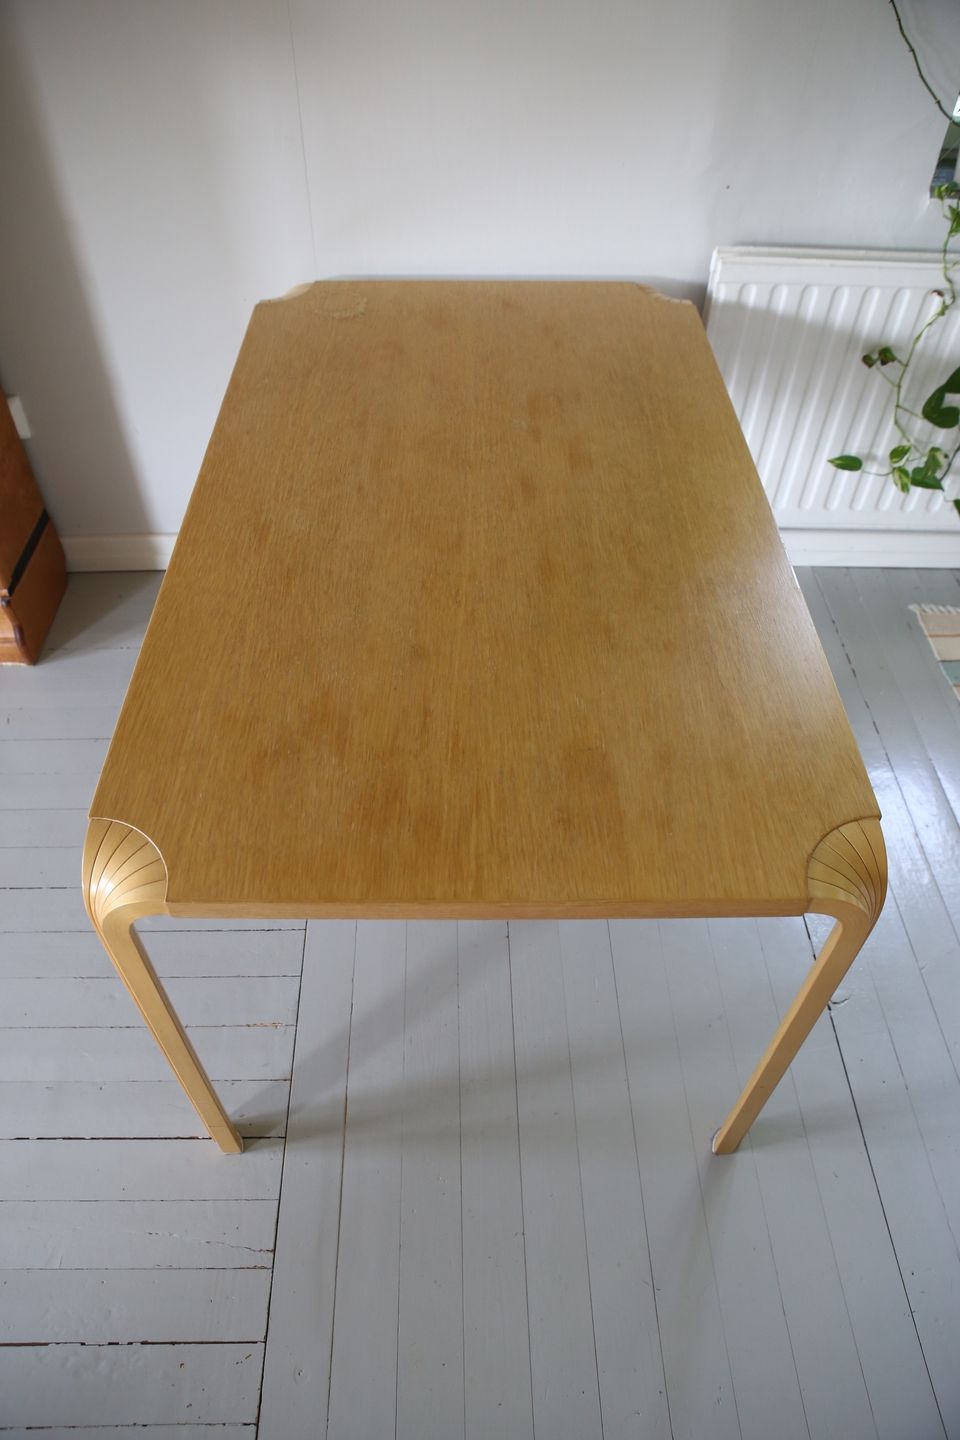 Aalto viuhkajalkaruokapöytä 135 x 80 cm